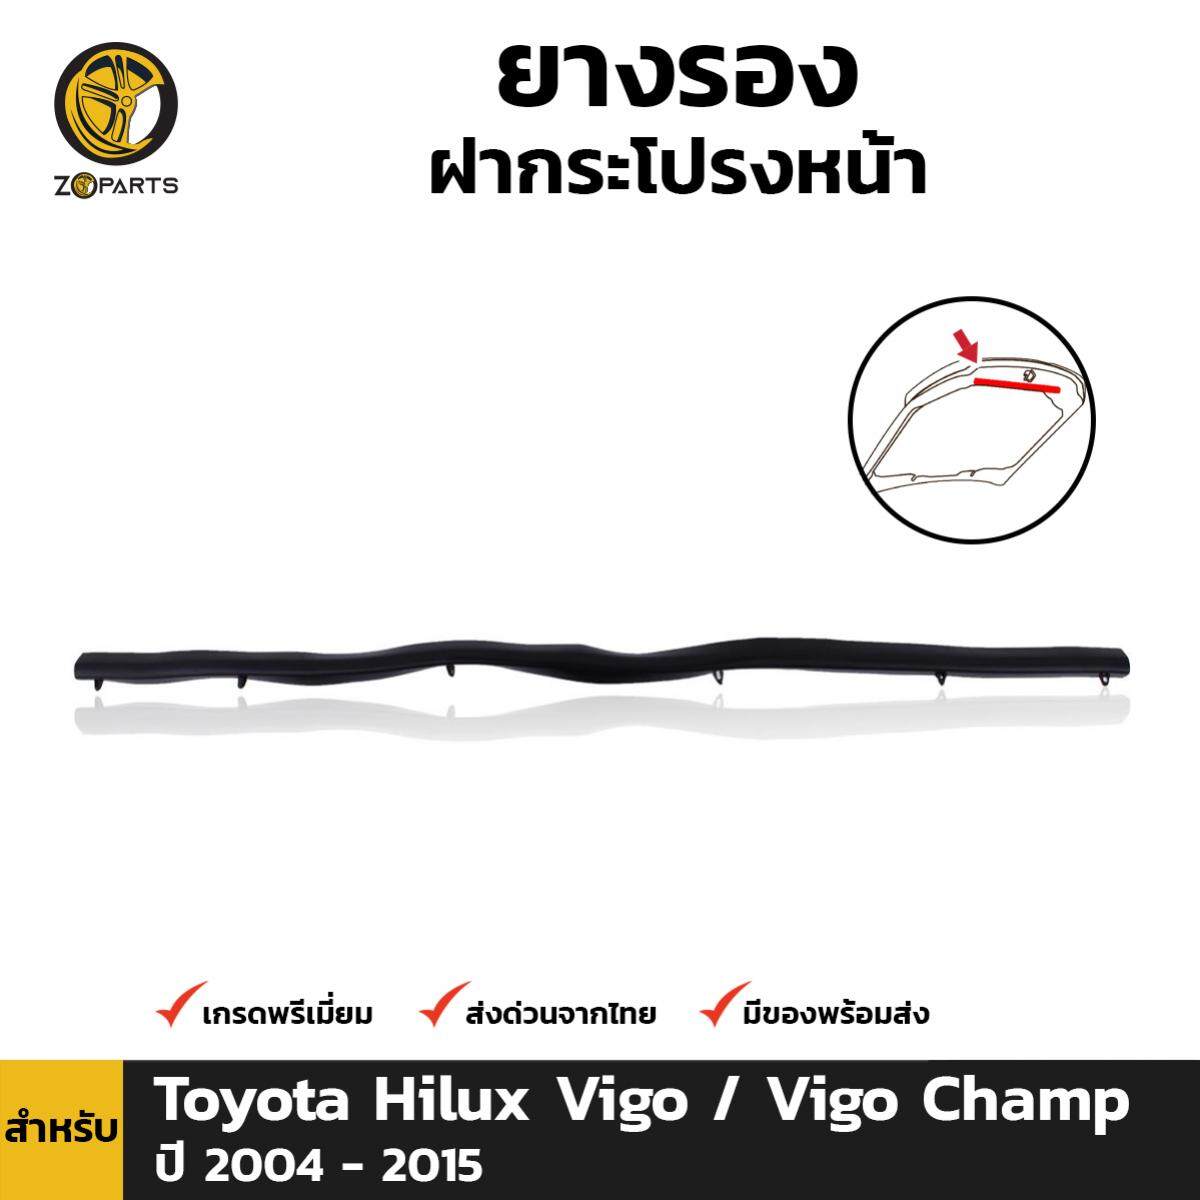 ยางรองฝากระโปรงหน้า สำหรับ Toyota Hilux Vigo Champ ปี 2011 - 2015 โตโยต้า ไฮลักซ์ วีโก้ แชมป์